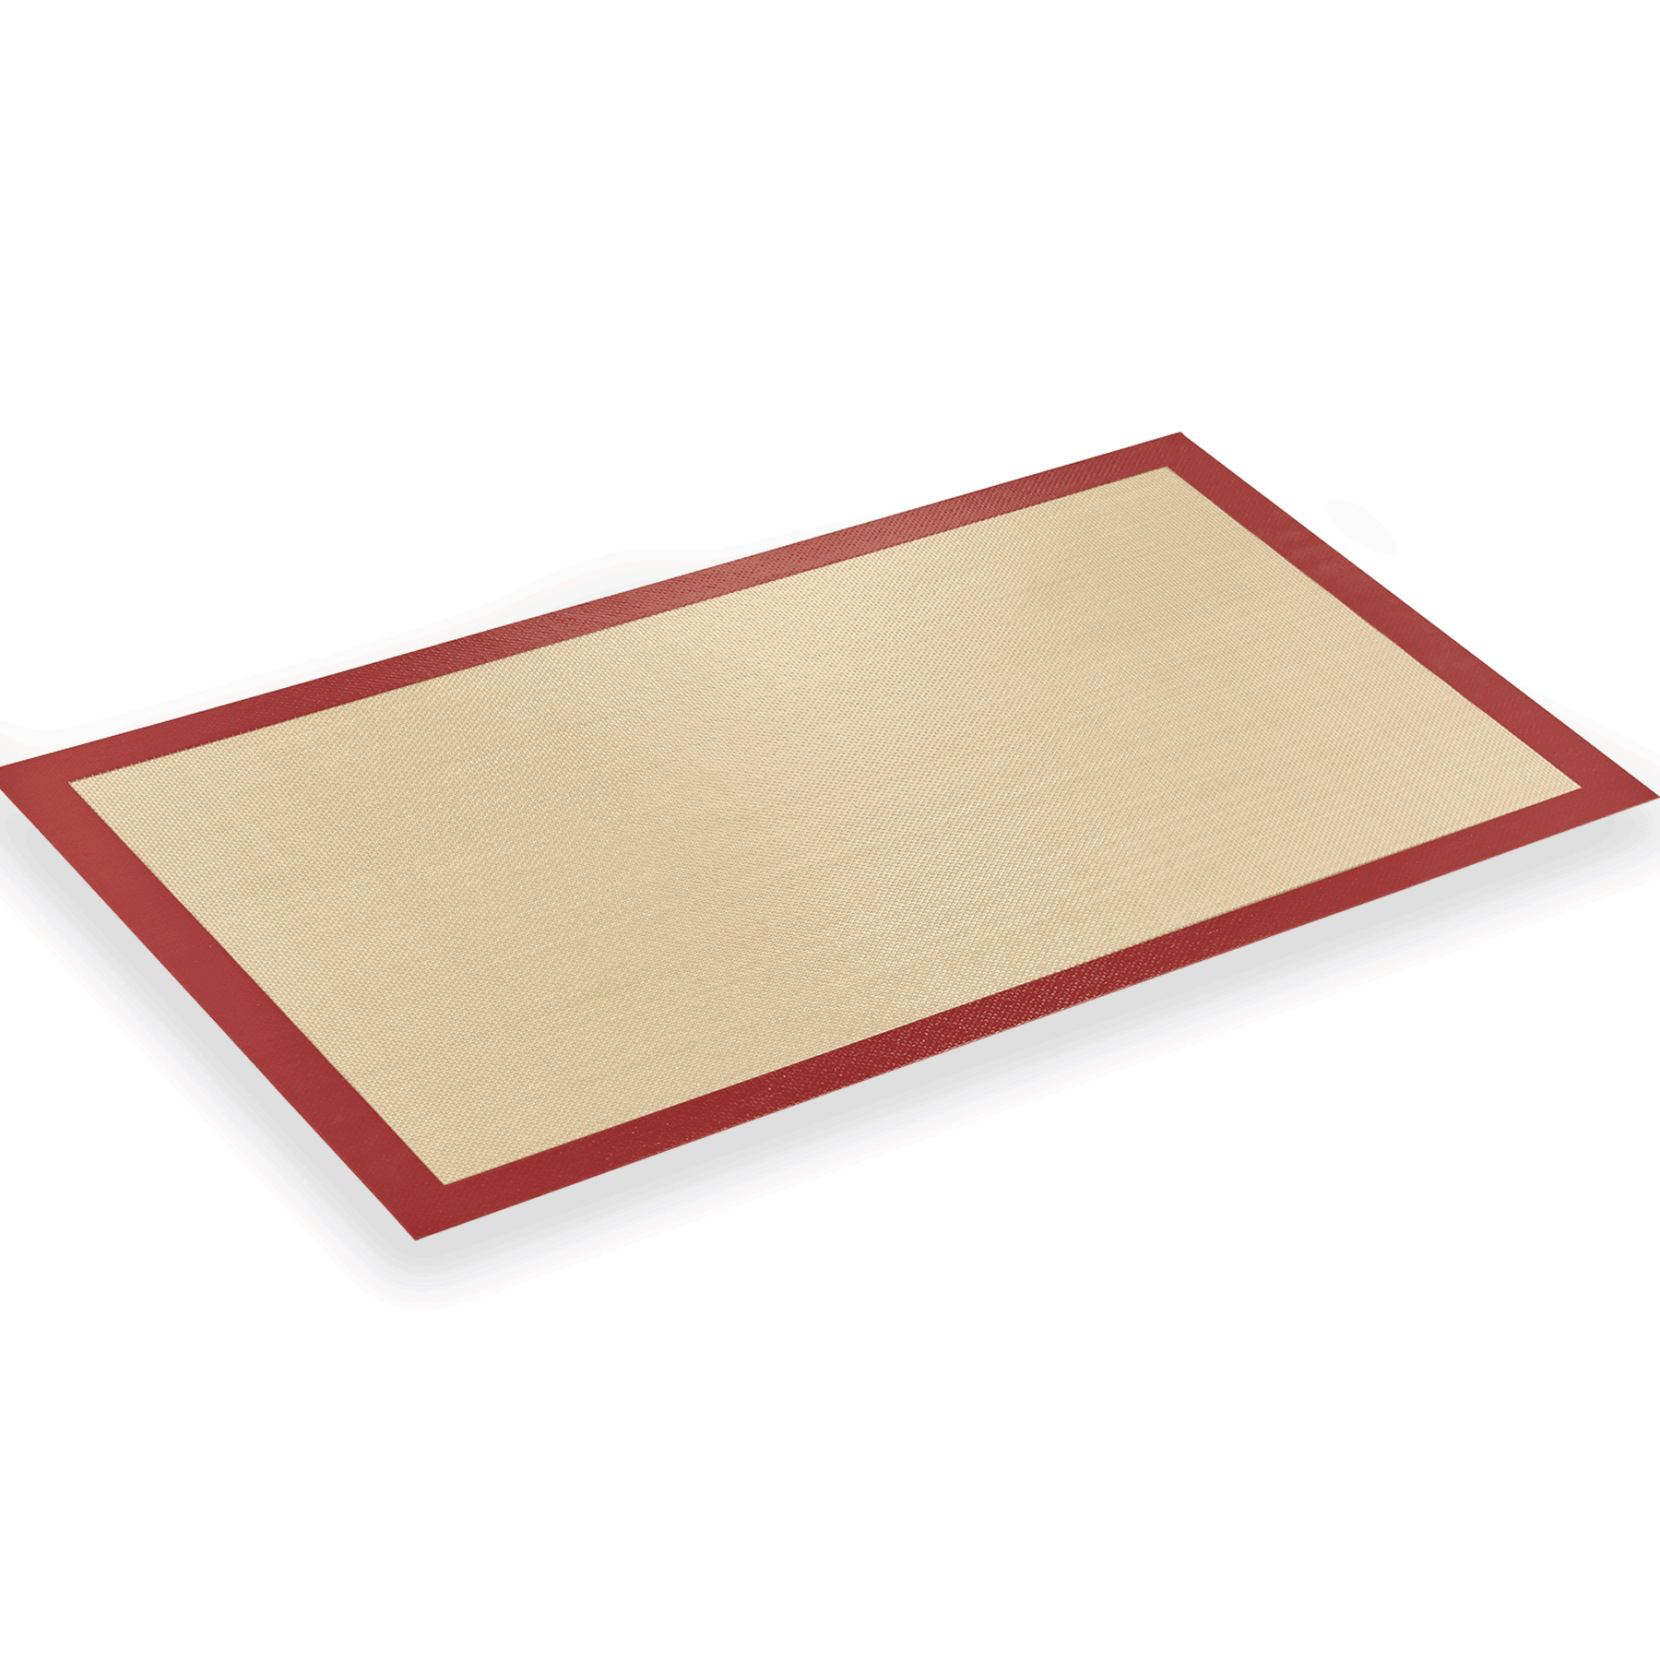 Backmatte, 52 x 31,5 cm, Silikon